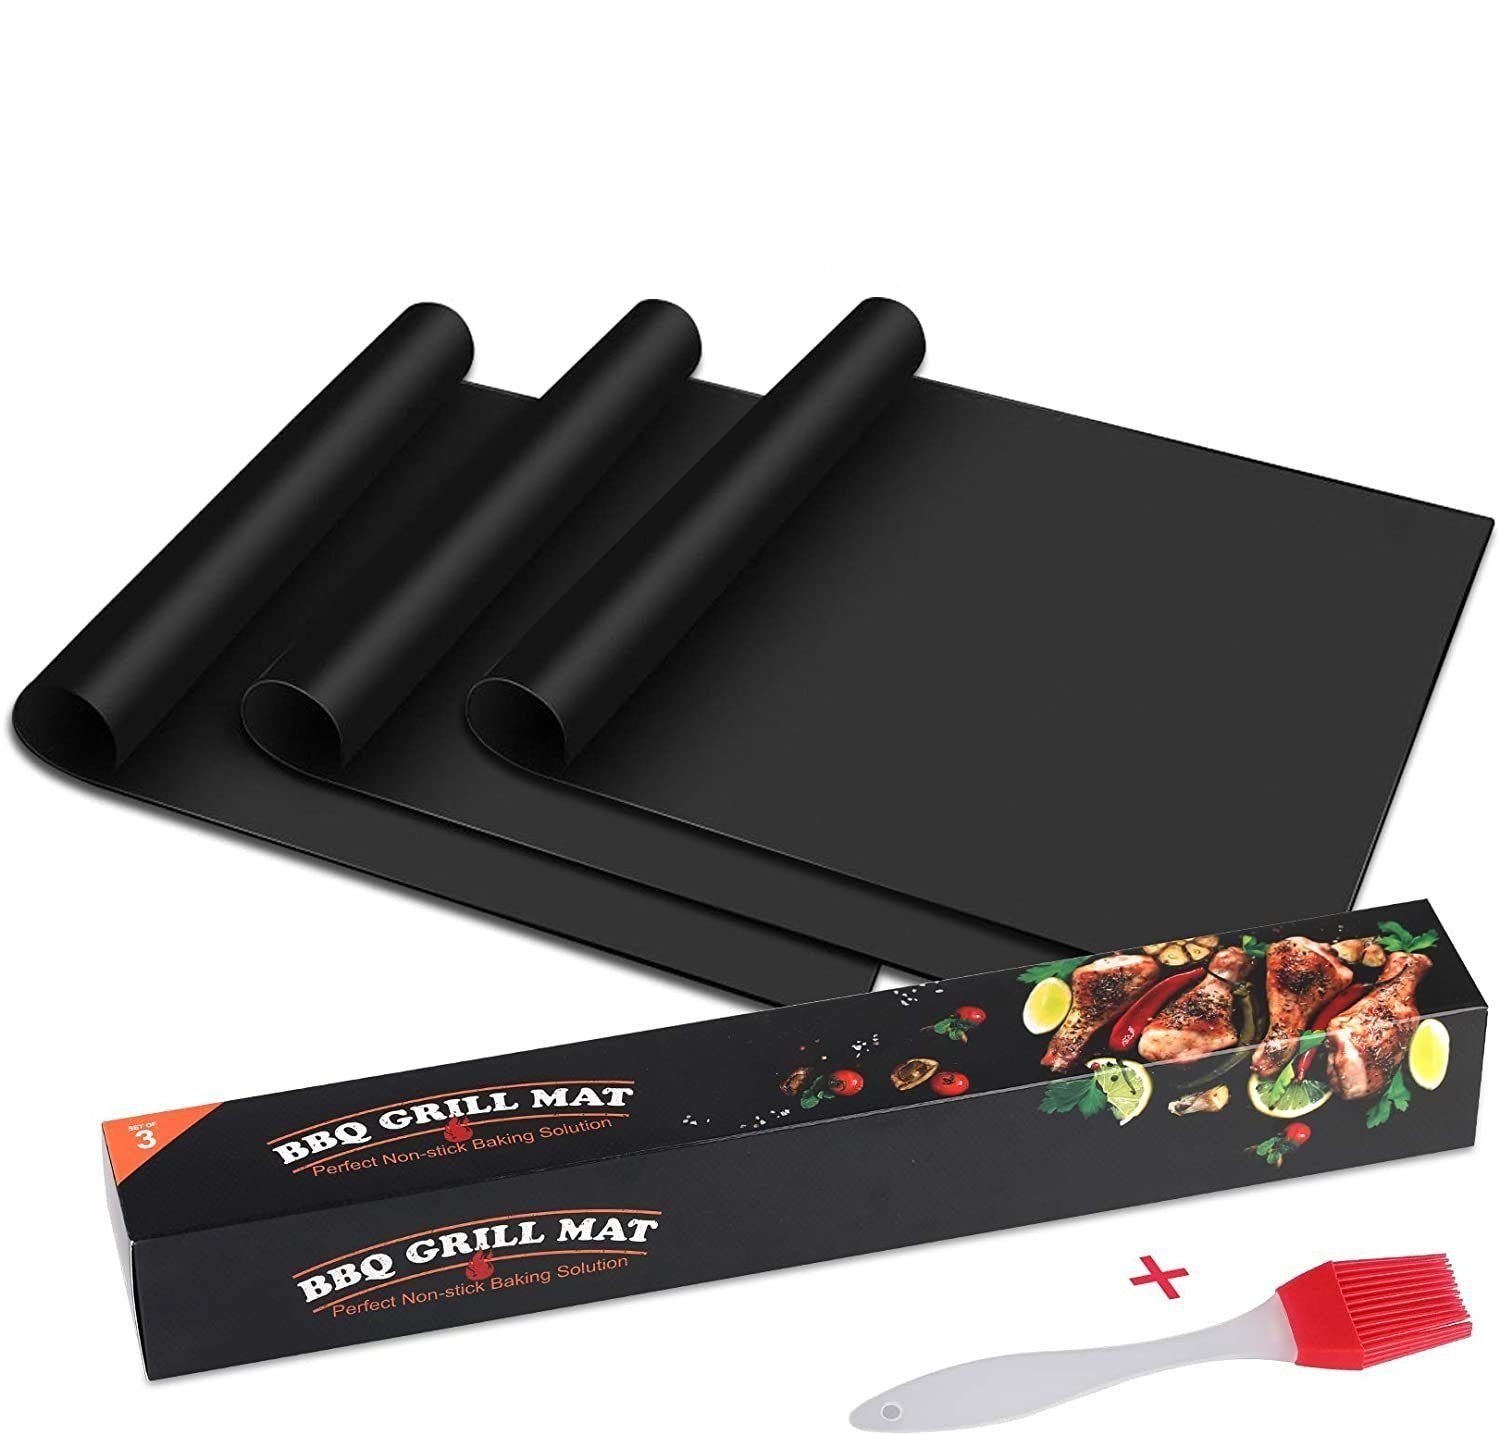 Elegear Backpapier, BBQ Grillmatte 3er Set 50x40 cm Wiederverwendbar FDA  Zulässig Grillmatten für Gasgrill und Backen Antihaft Teflon Grillmatten  online kaufen | OTTO